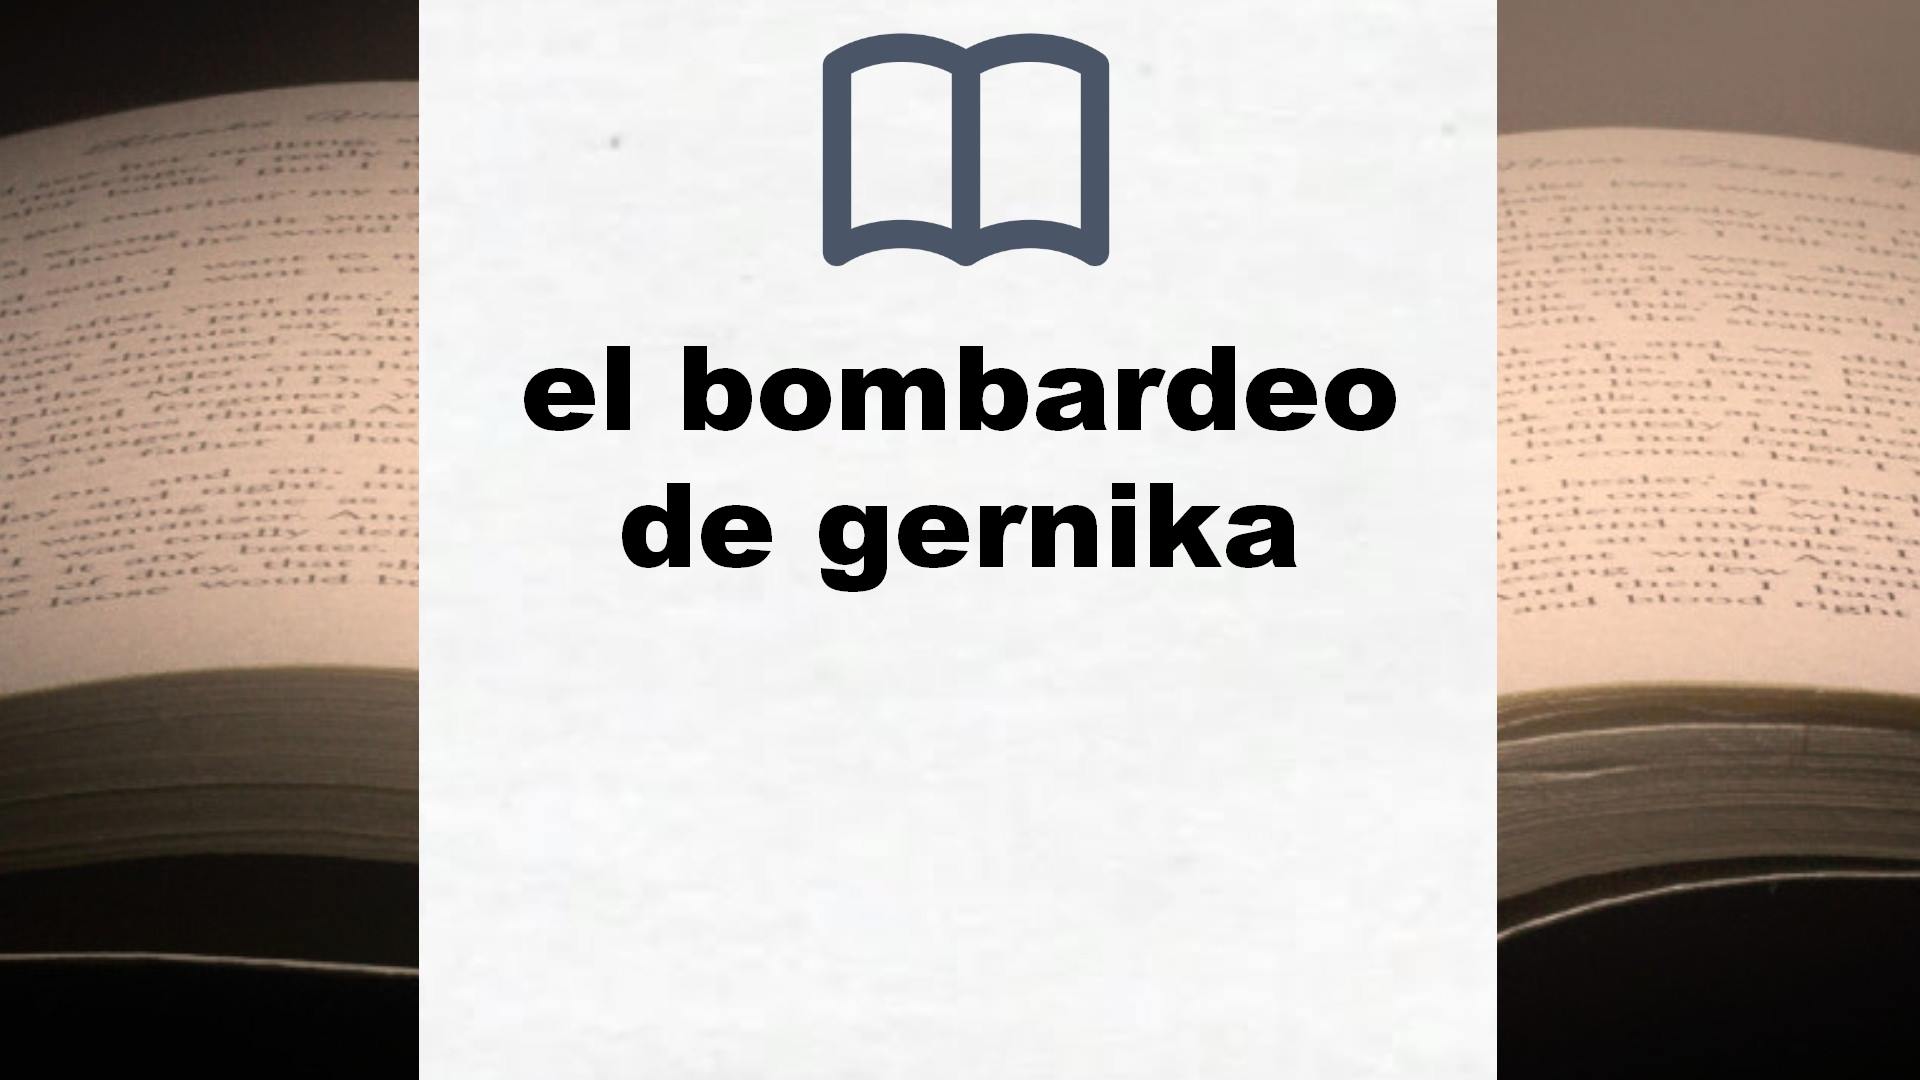 Libros sobre el bombardeo de gernika